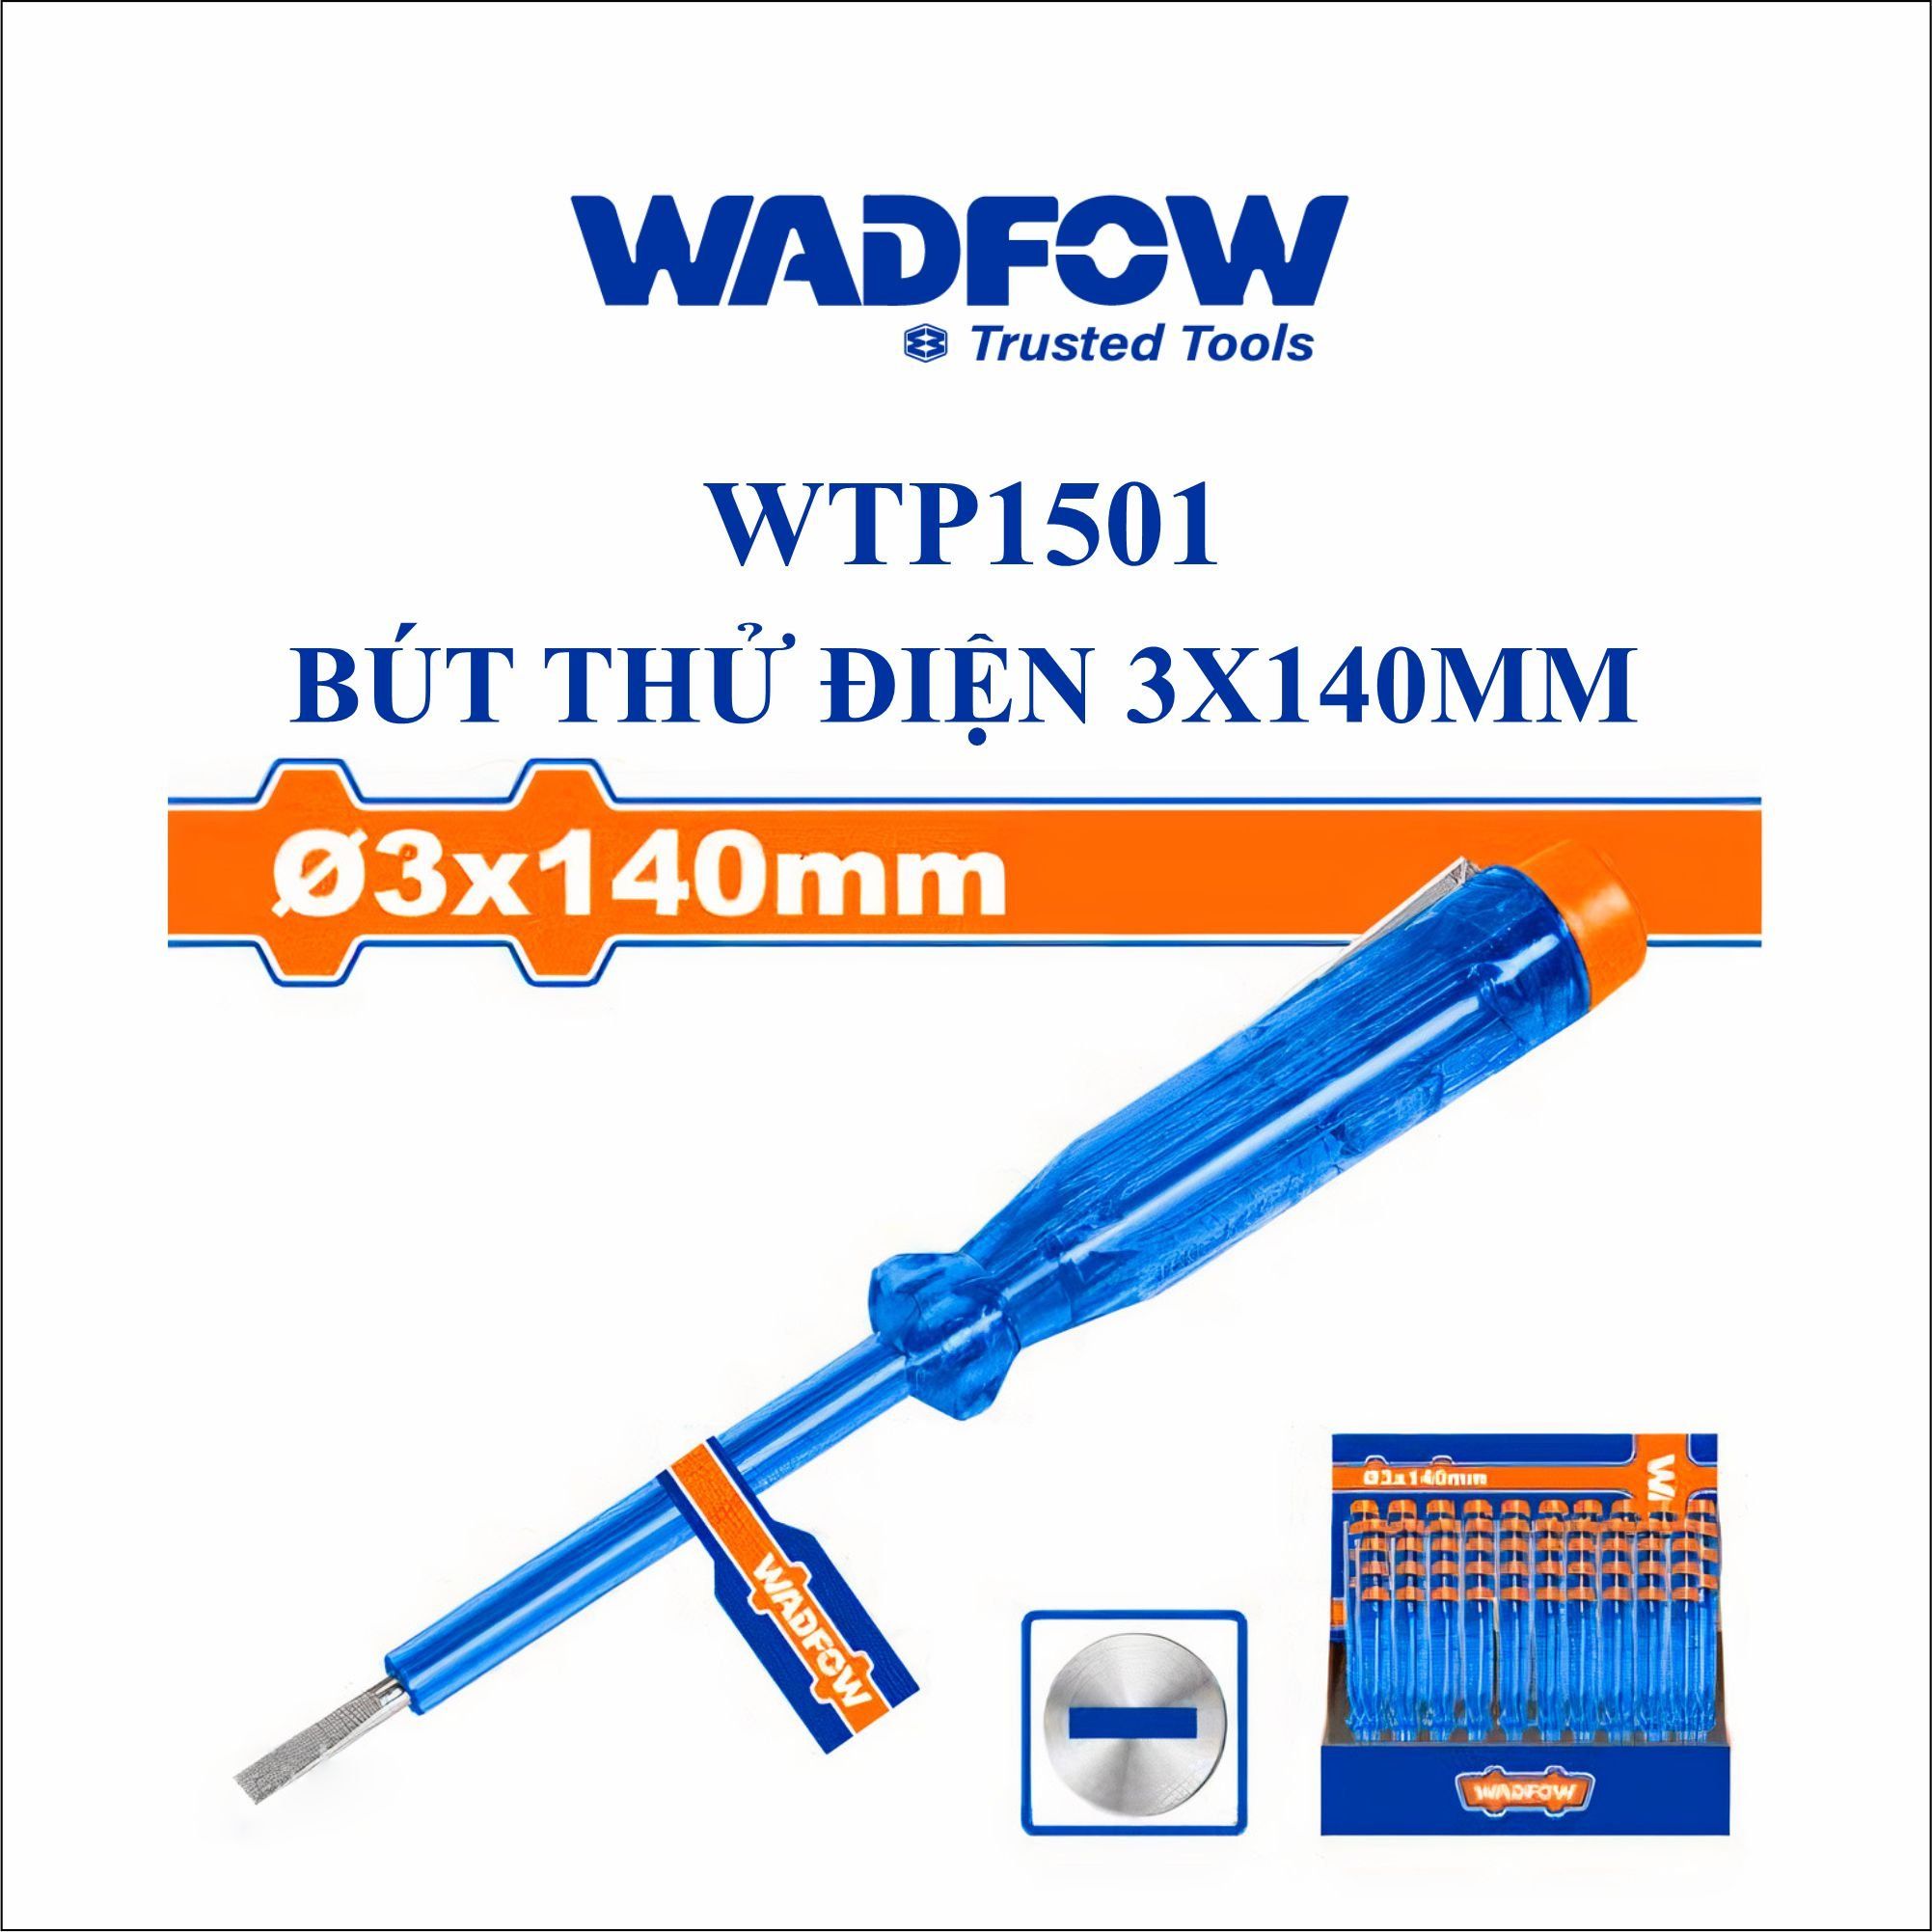  Bút thử điện 3x140mm WADFOW WTP1501 